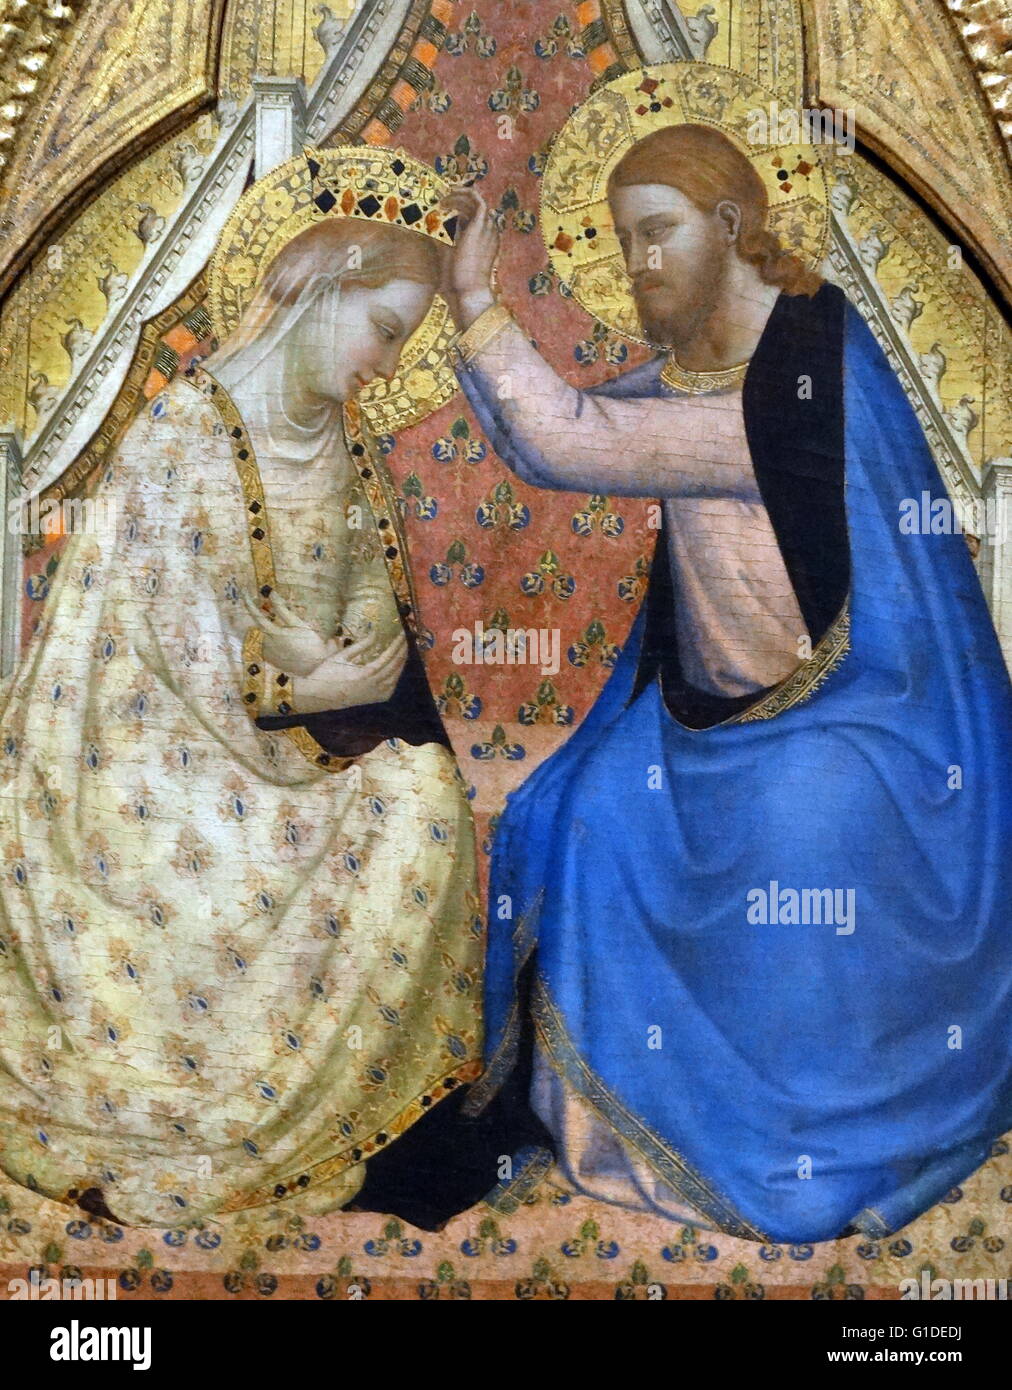 Gemälde mit dem Titel "Die Krönung der Jungfrau" von Bernardo Daddi (1290-1348) einen frühen italienischen Renaissance-Maler. Vom 14. Jahrhundert Stockfoto